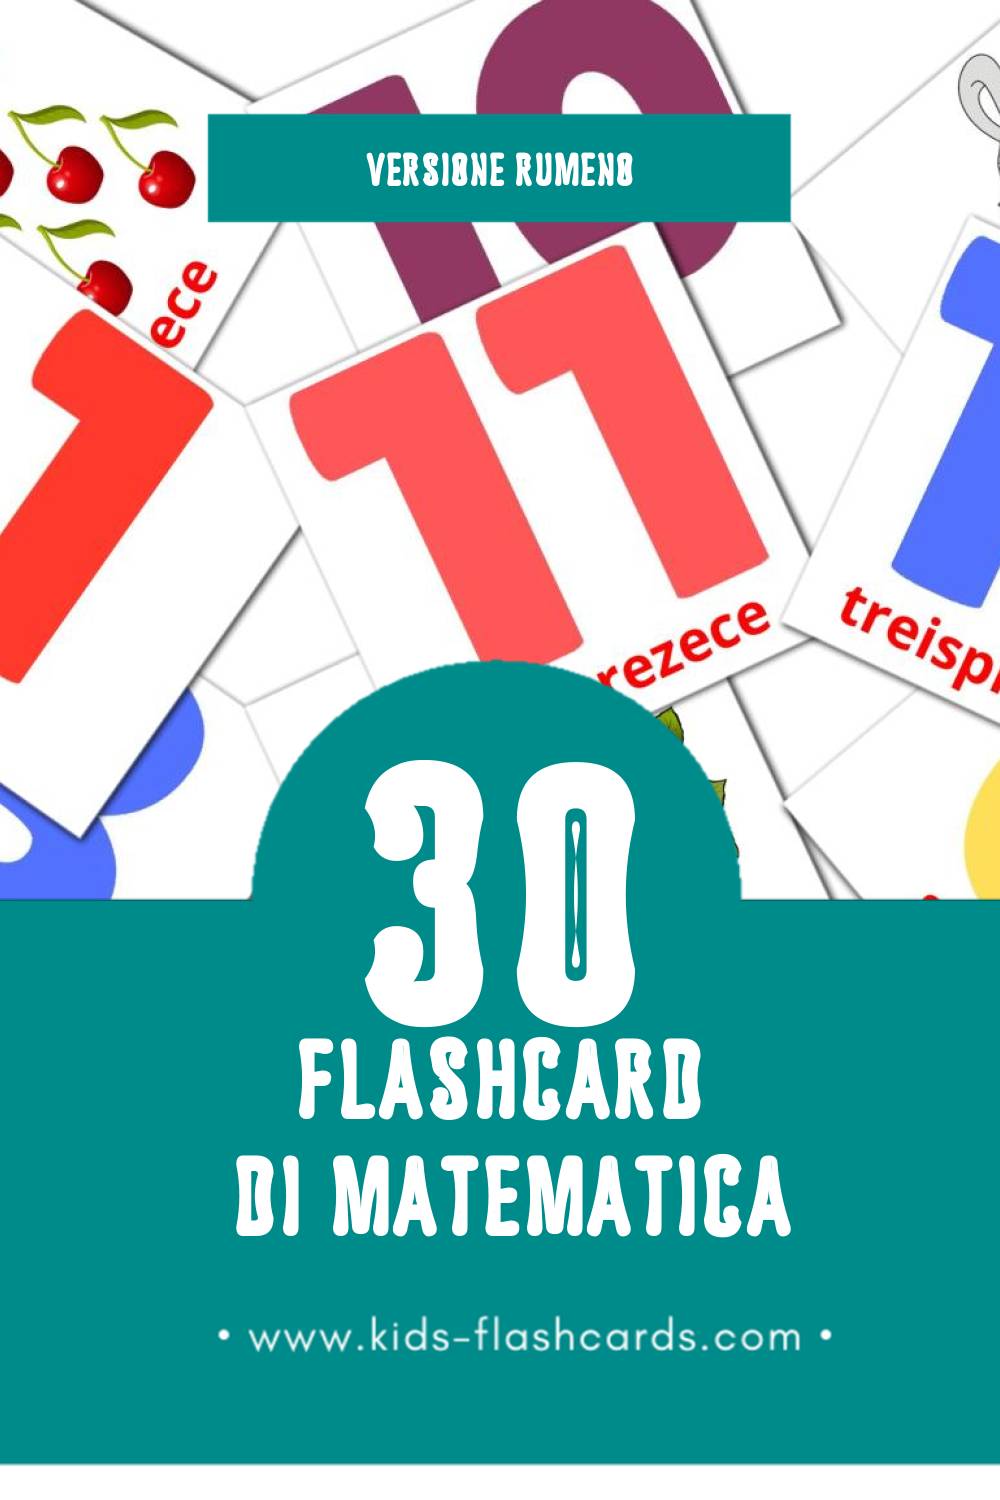 Schede visive sugli Matematică per bambini (30 schede in Rumeno)